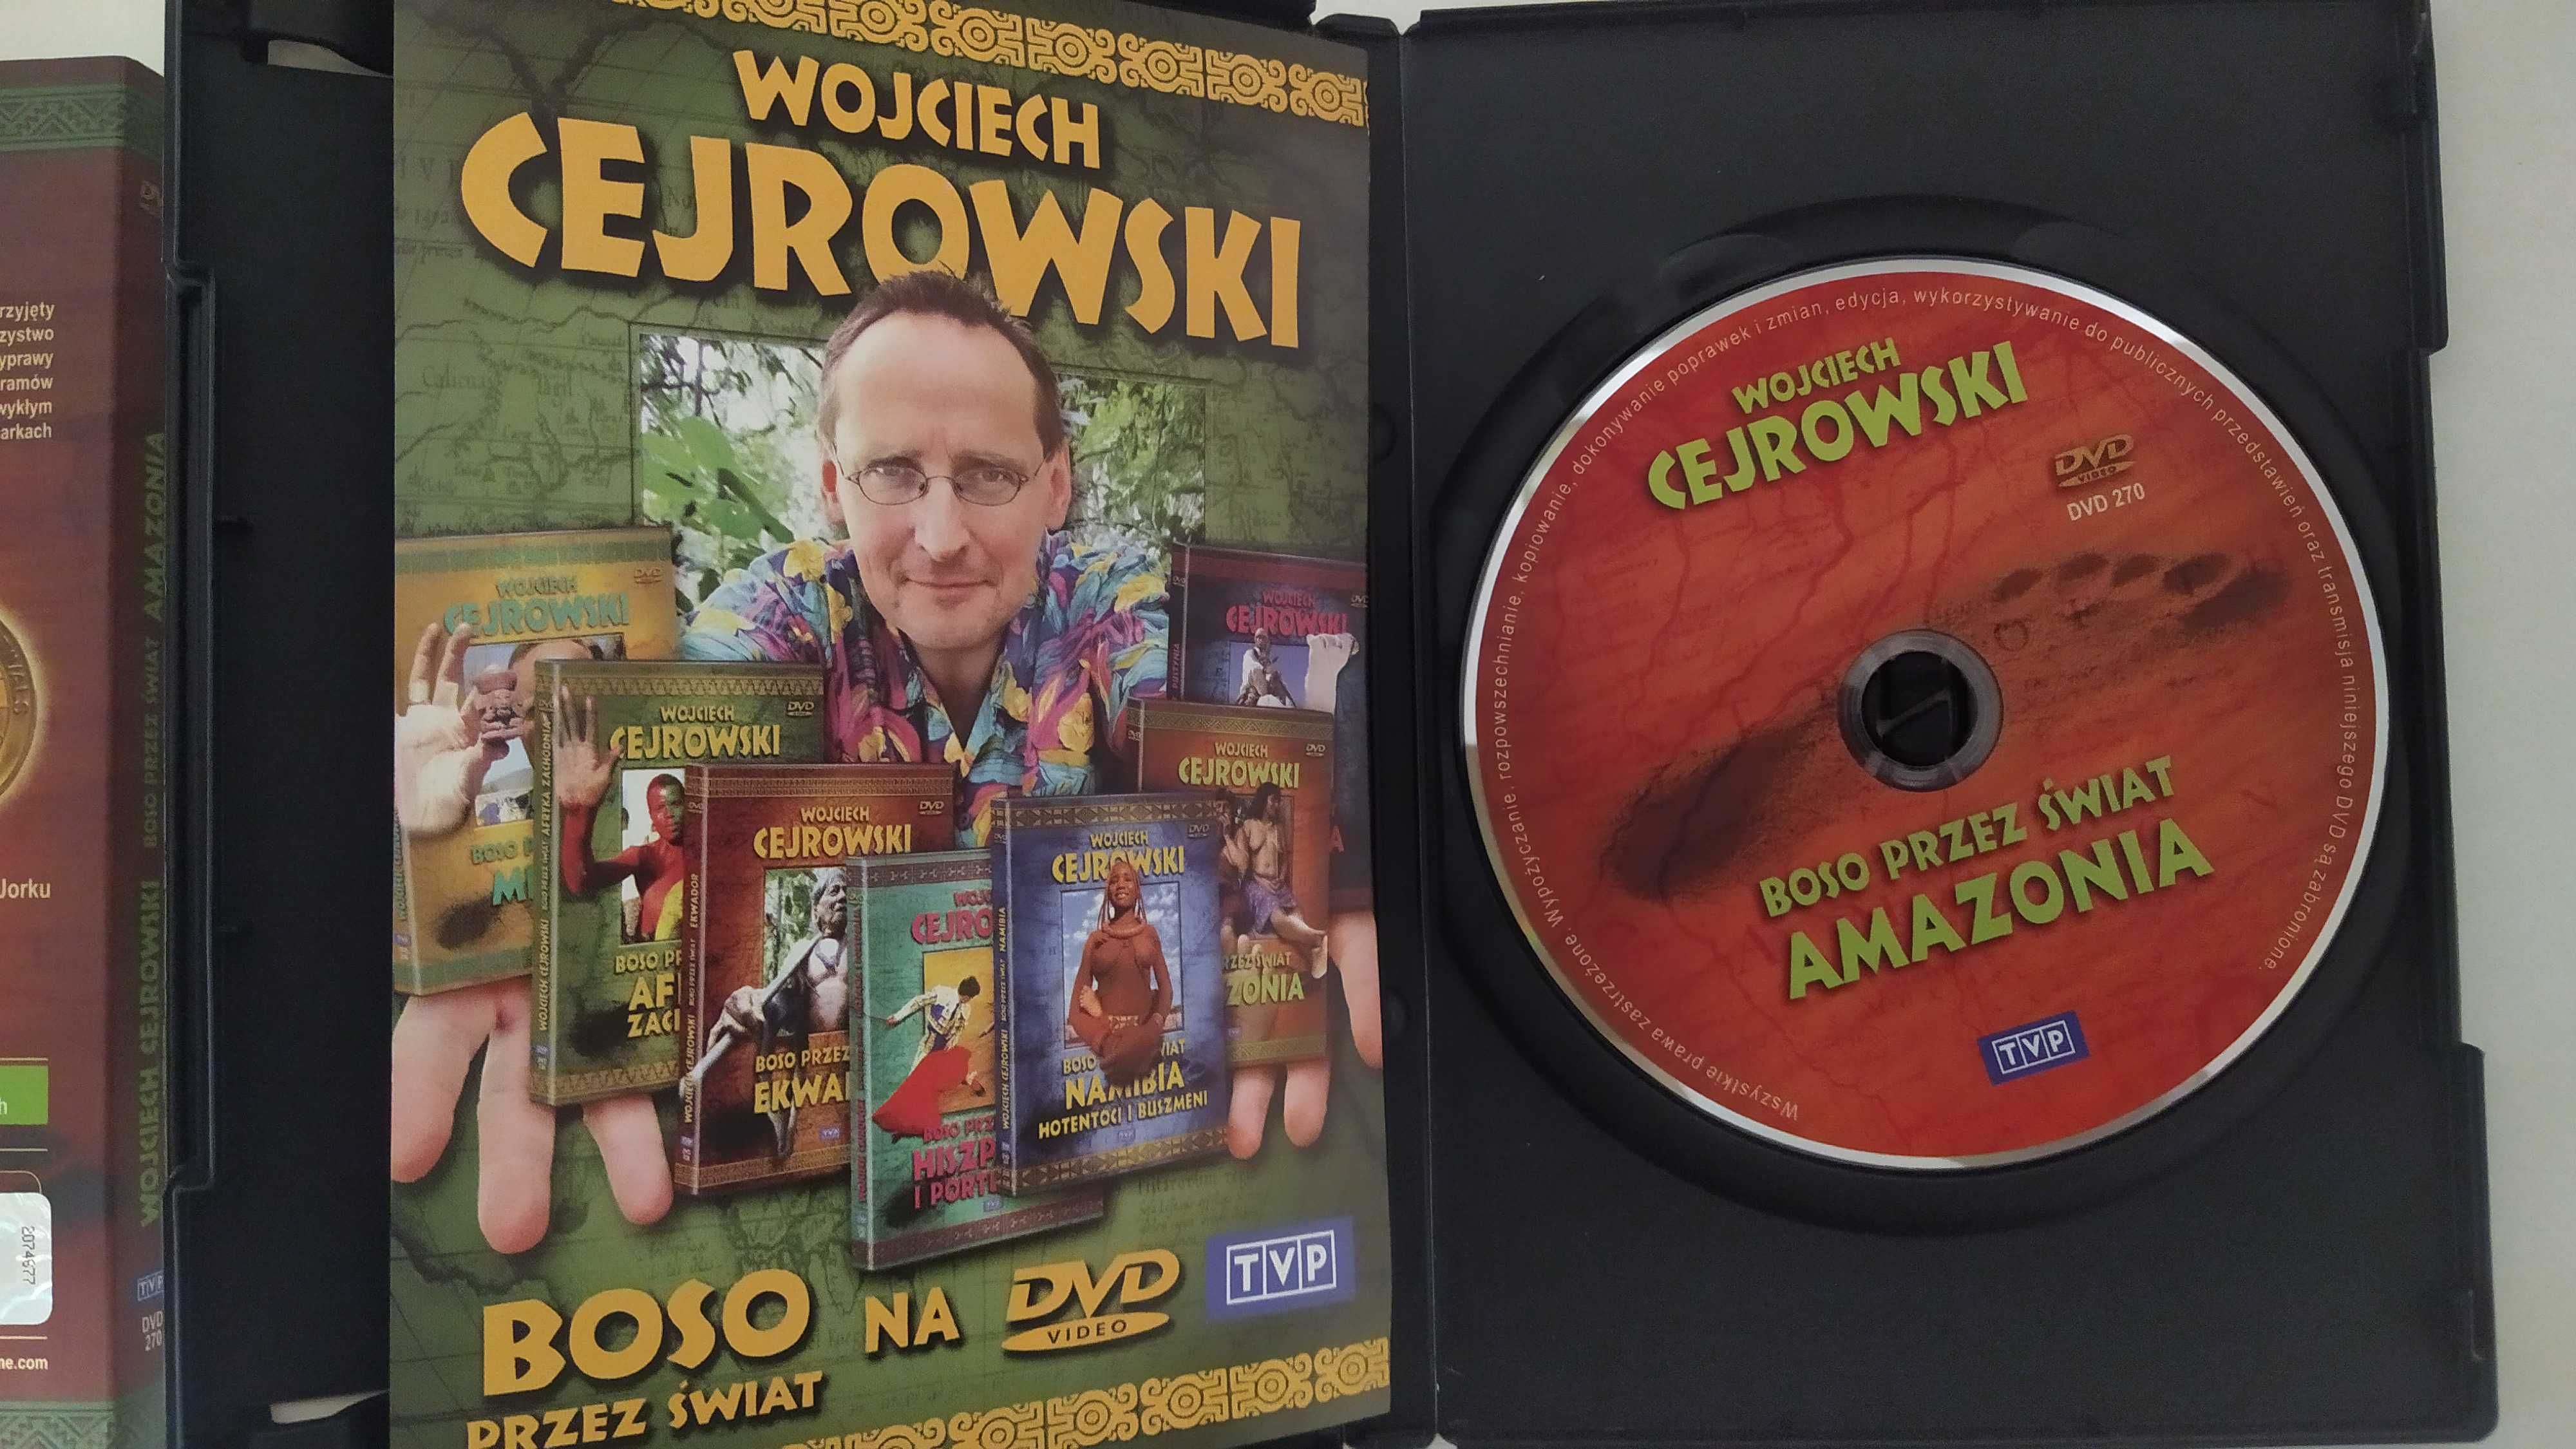 Wojciech Cejrowski Boso przez Świat Amazonia DVD